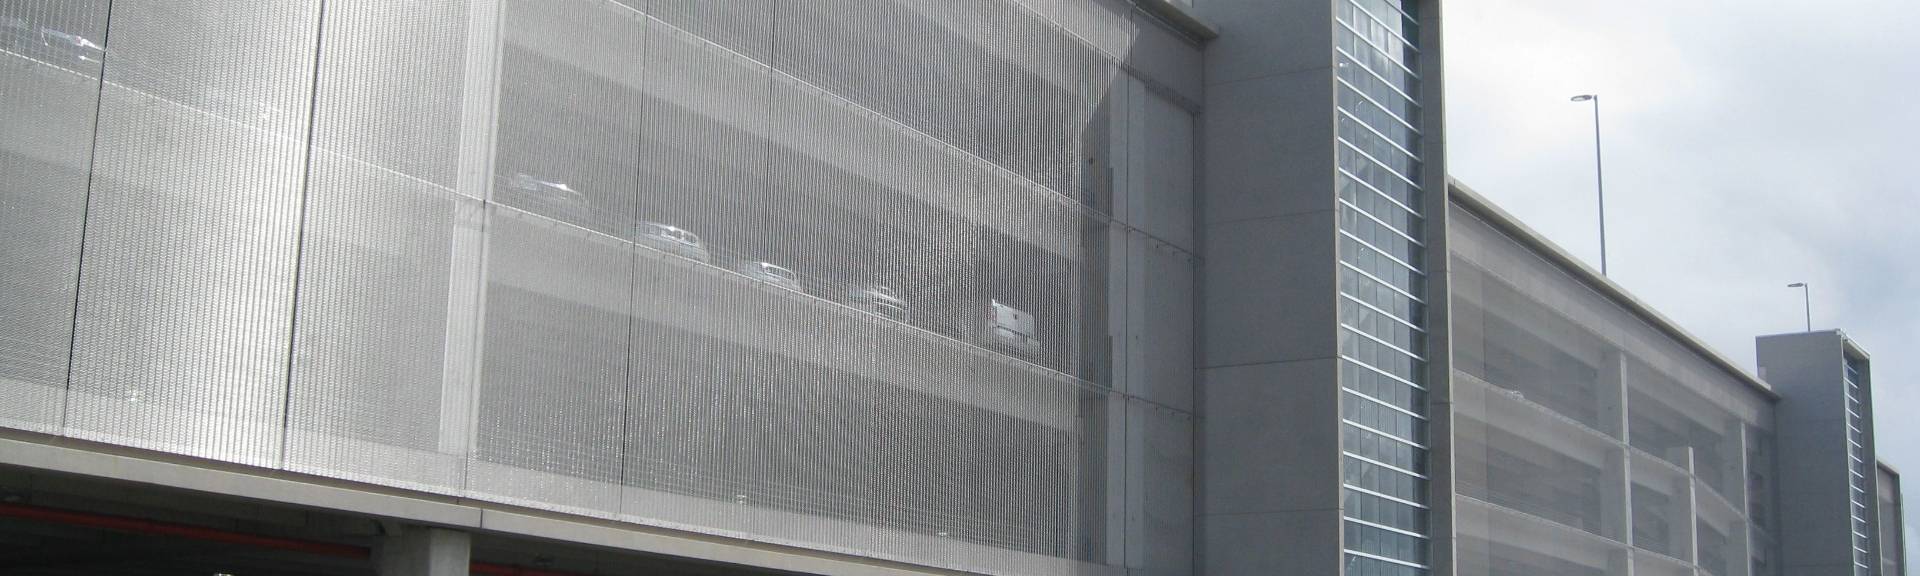 鉑格建築網格用作停車屏幕。